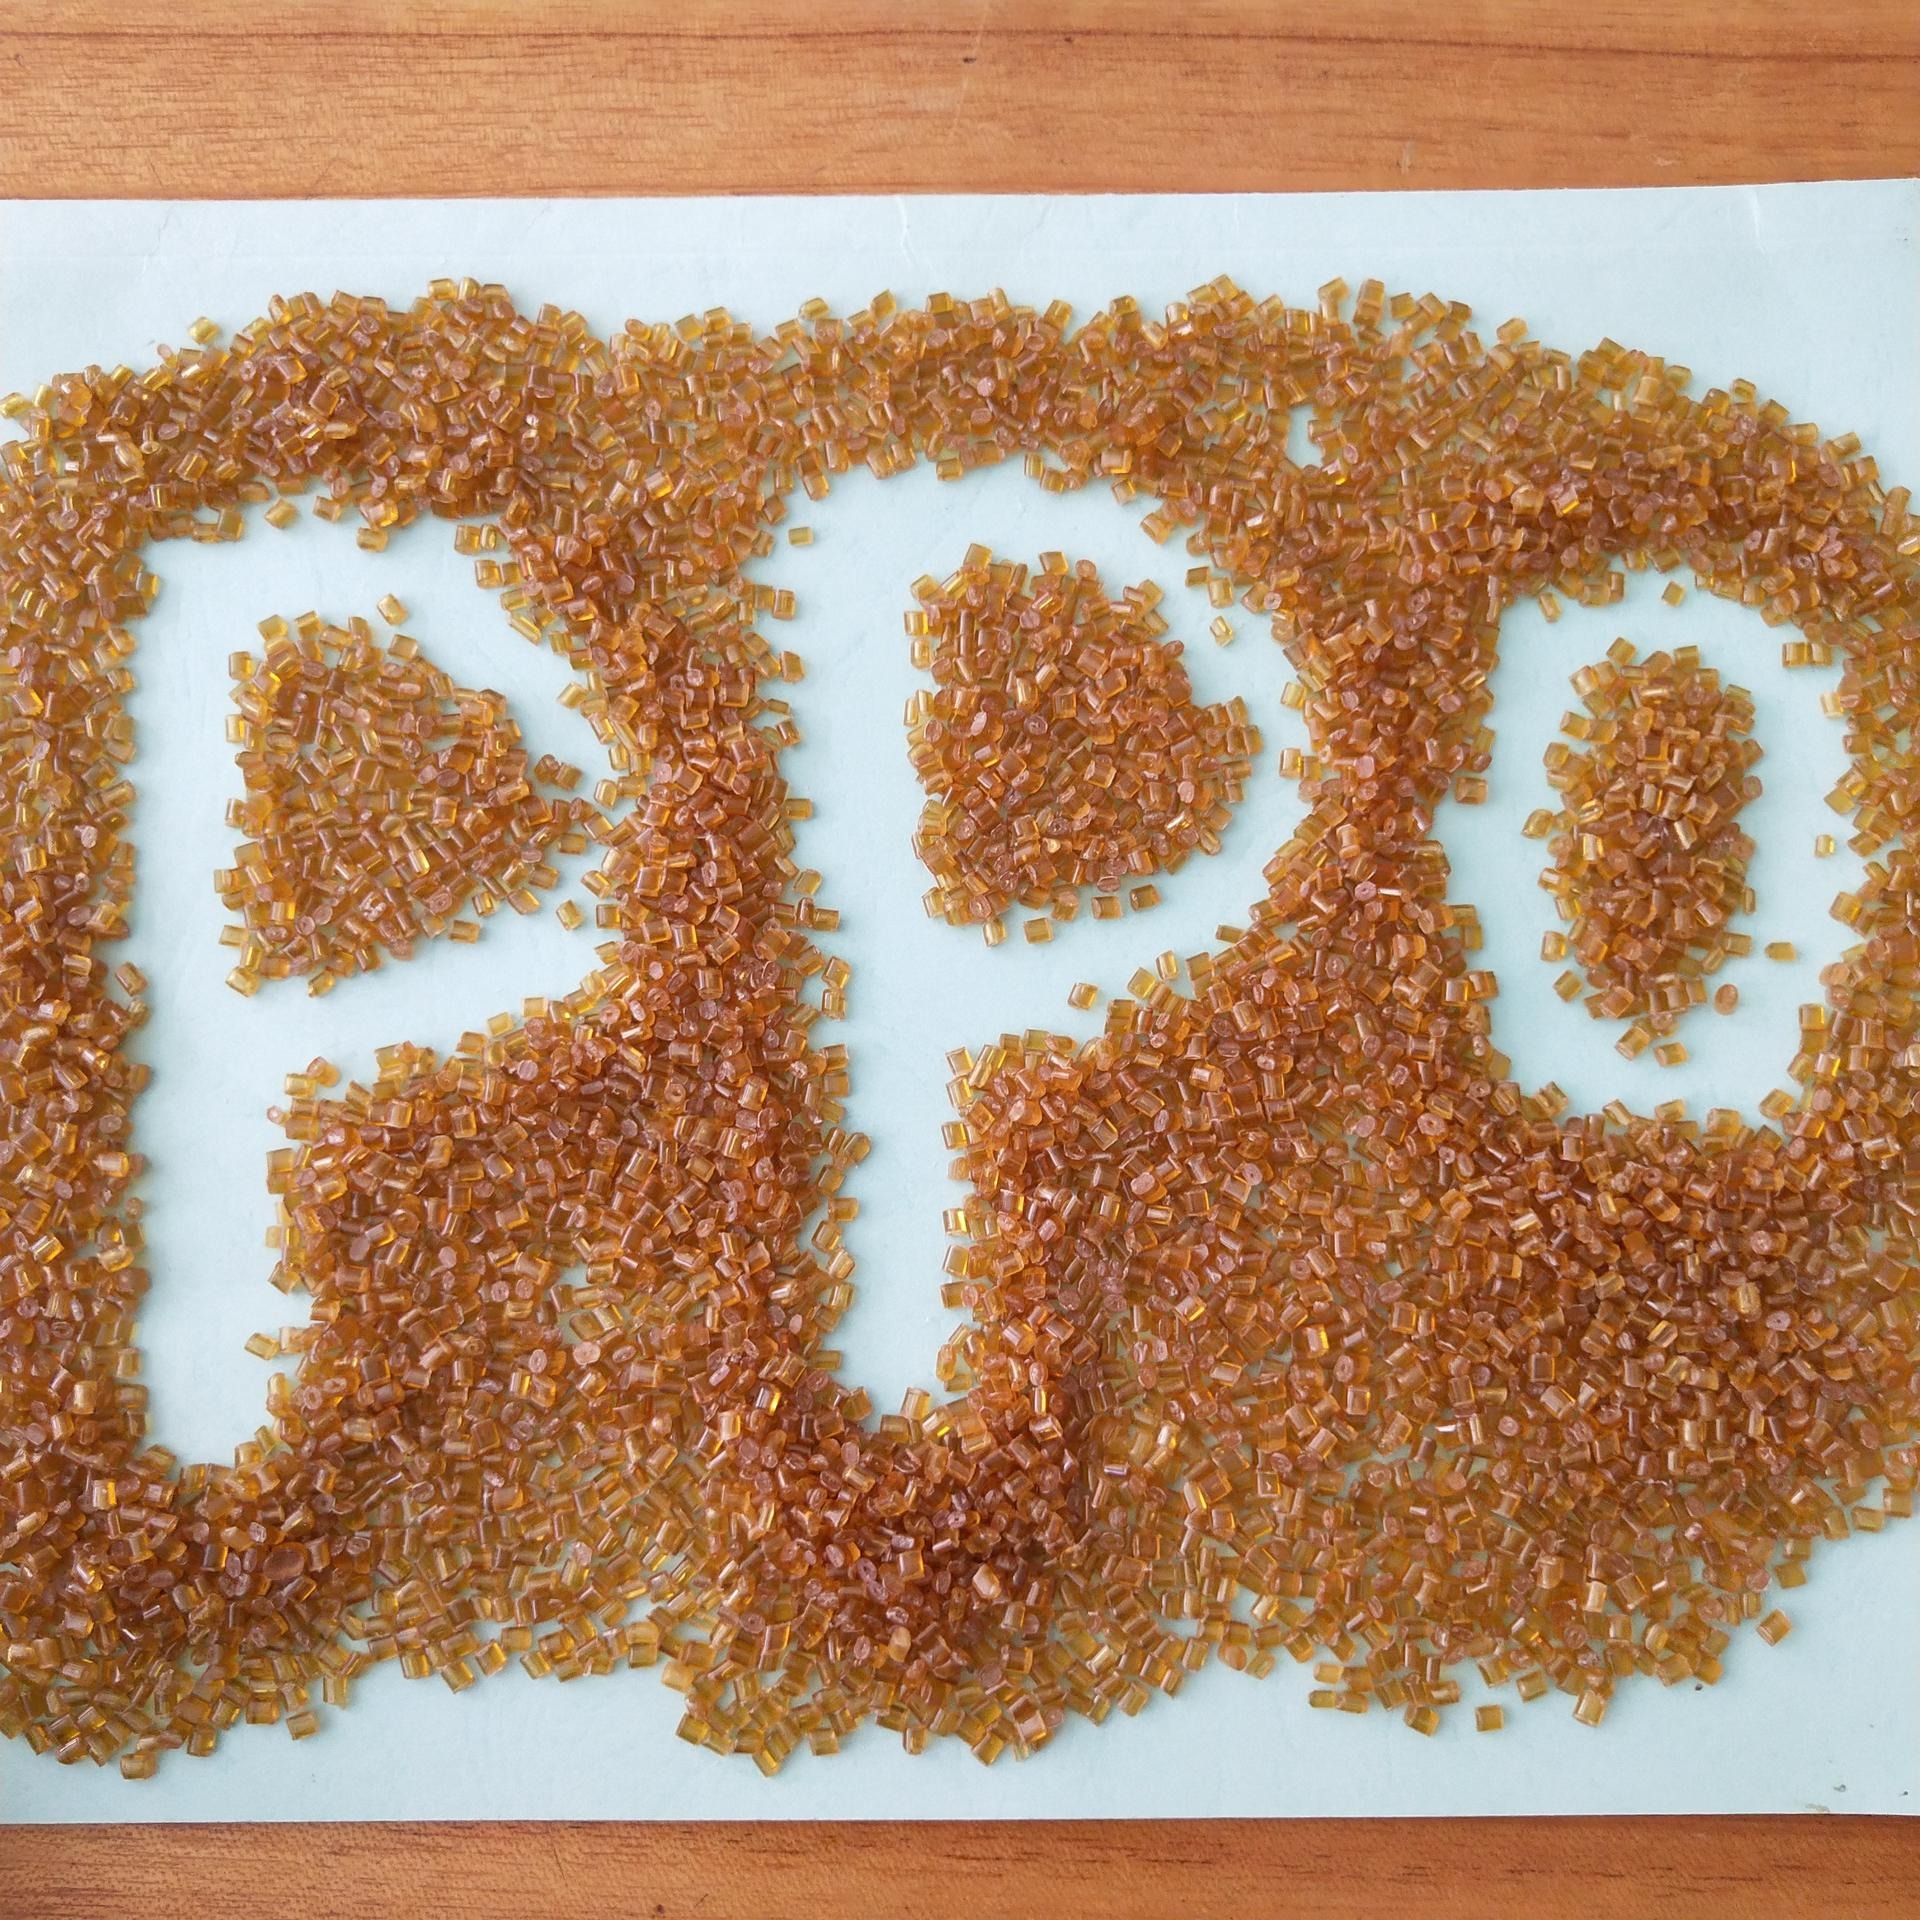 纯PPO树脂    改性PPO素材  聚苯醚纯树脂颗粒   长期现货供应  纯PPE树脂